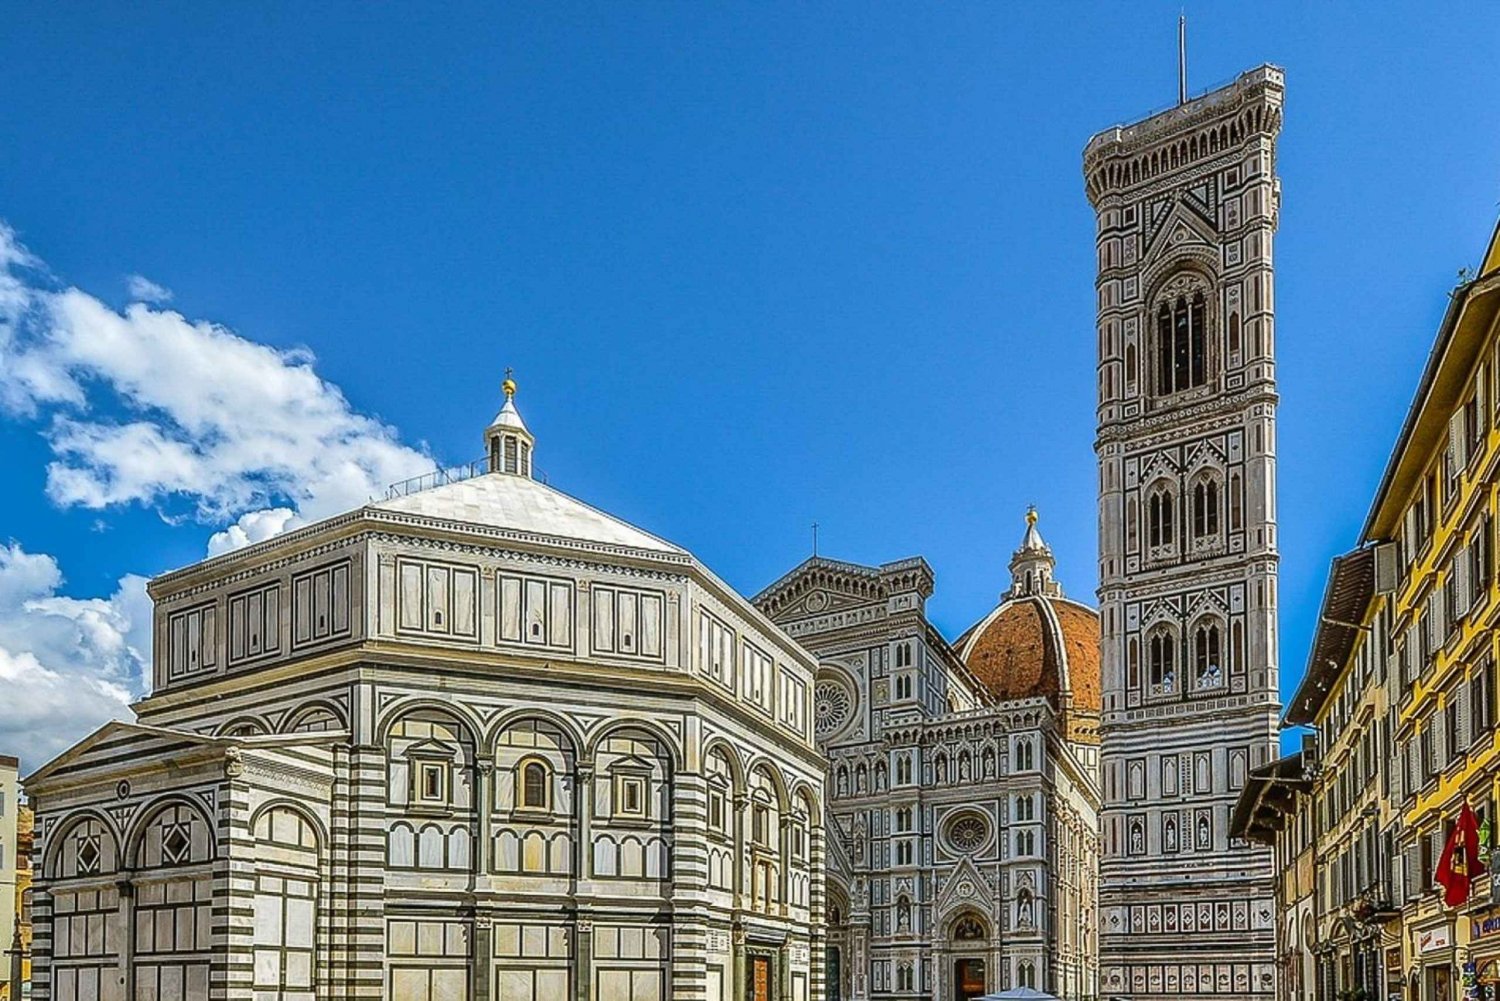 Roomasta: Firenze ja Pisa: Firenzen ja Pisan kokopäiväretki pienryhmäretki